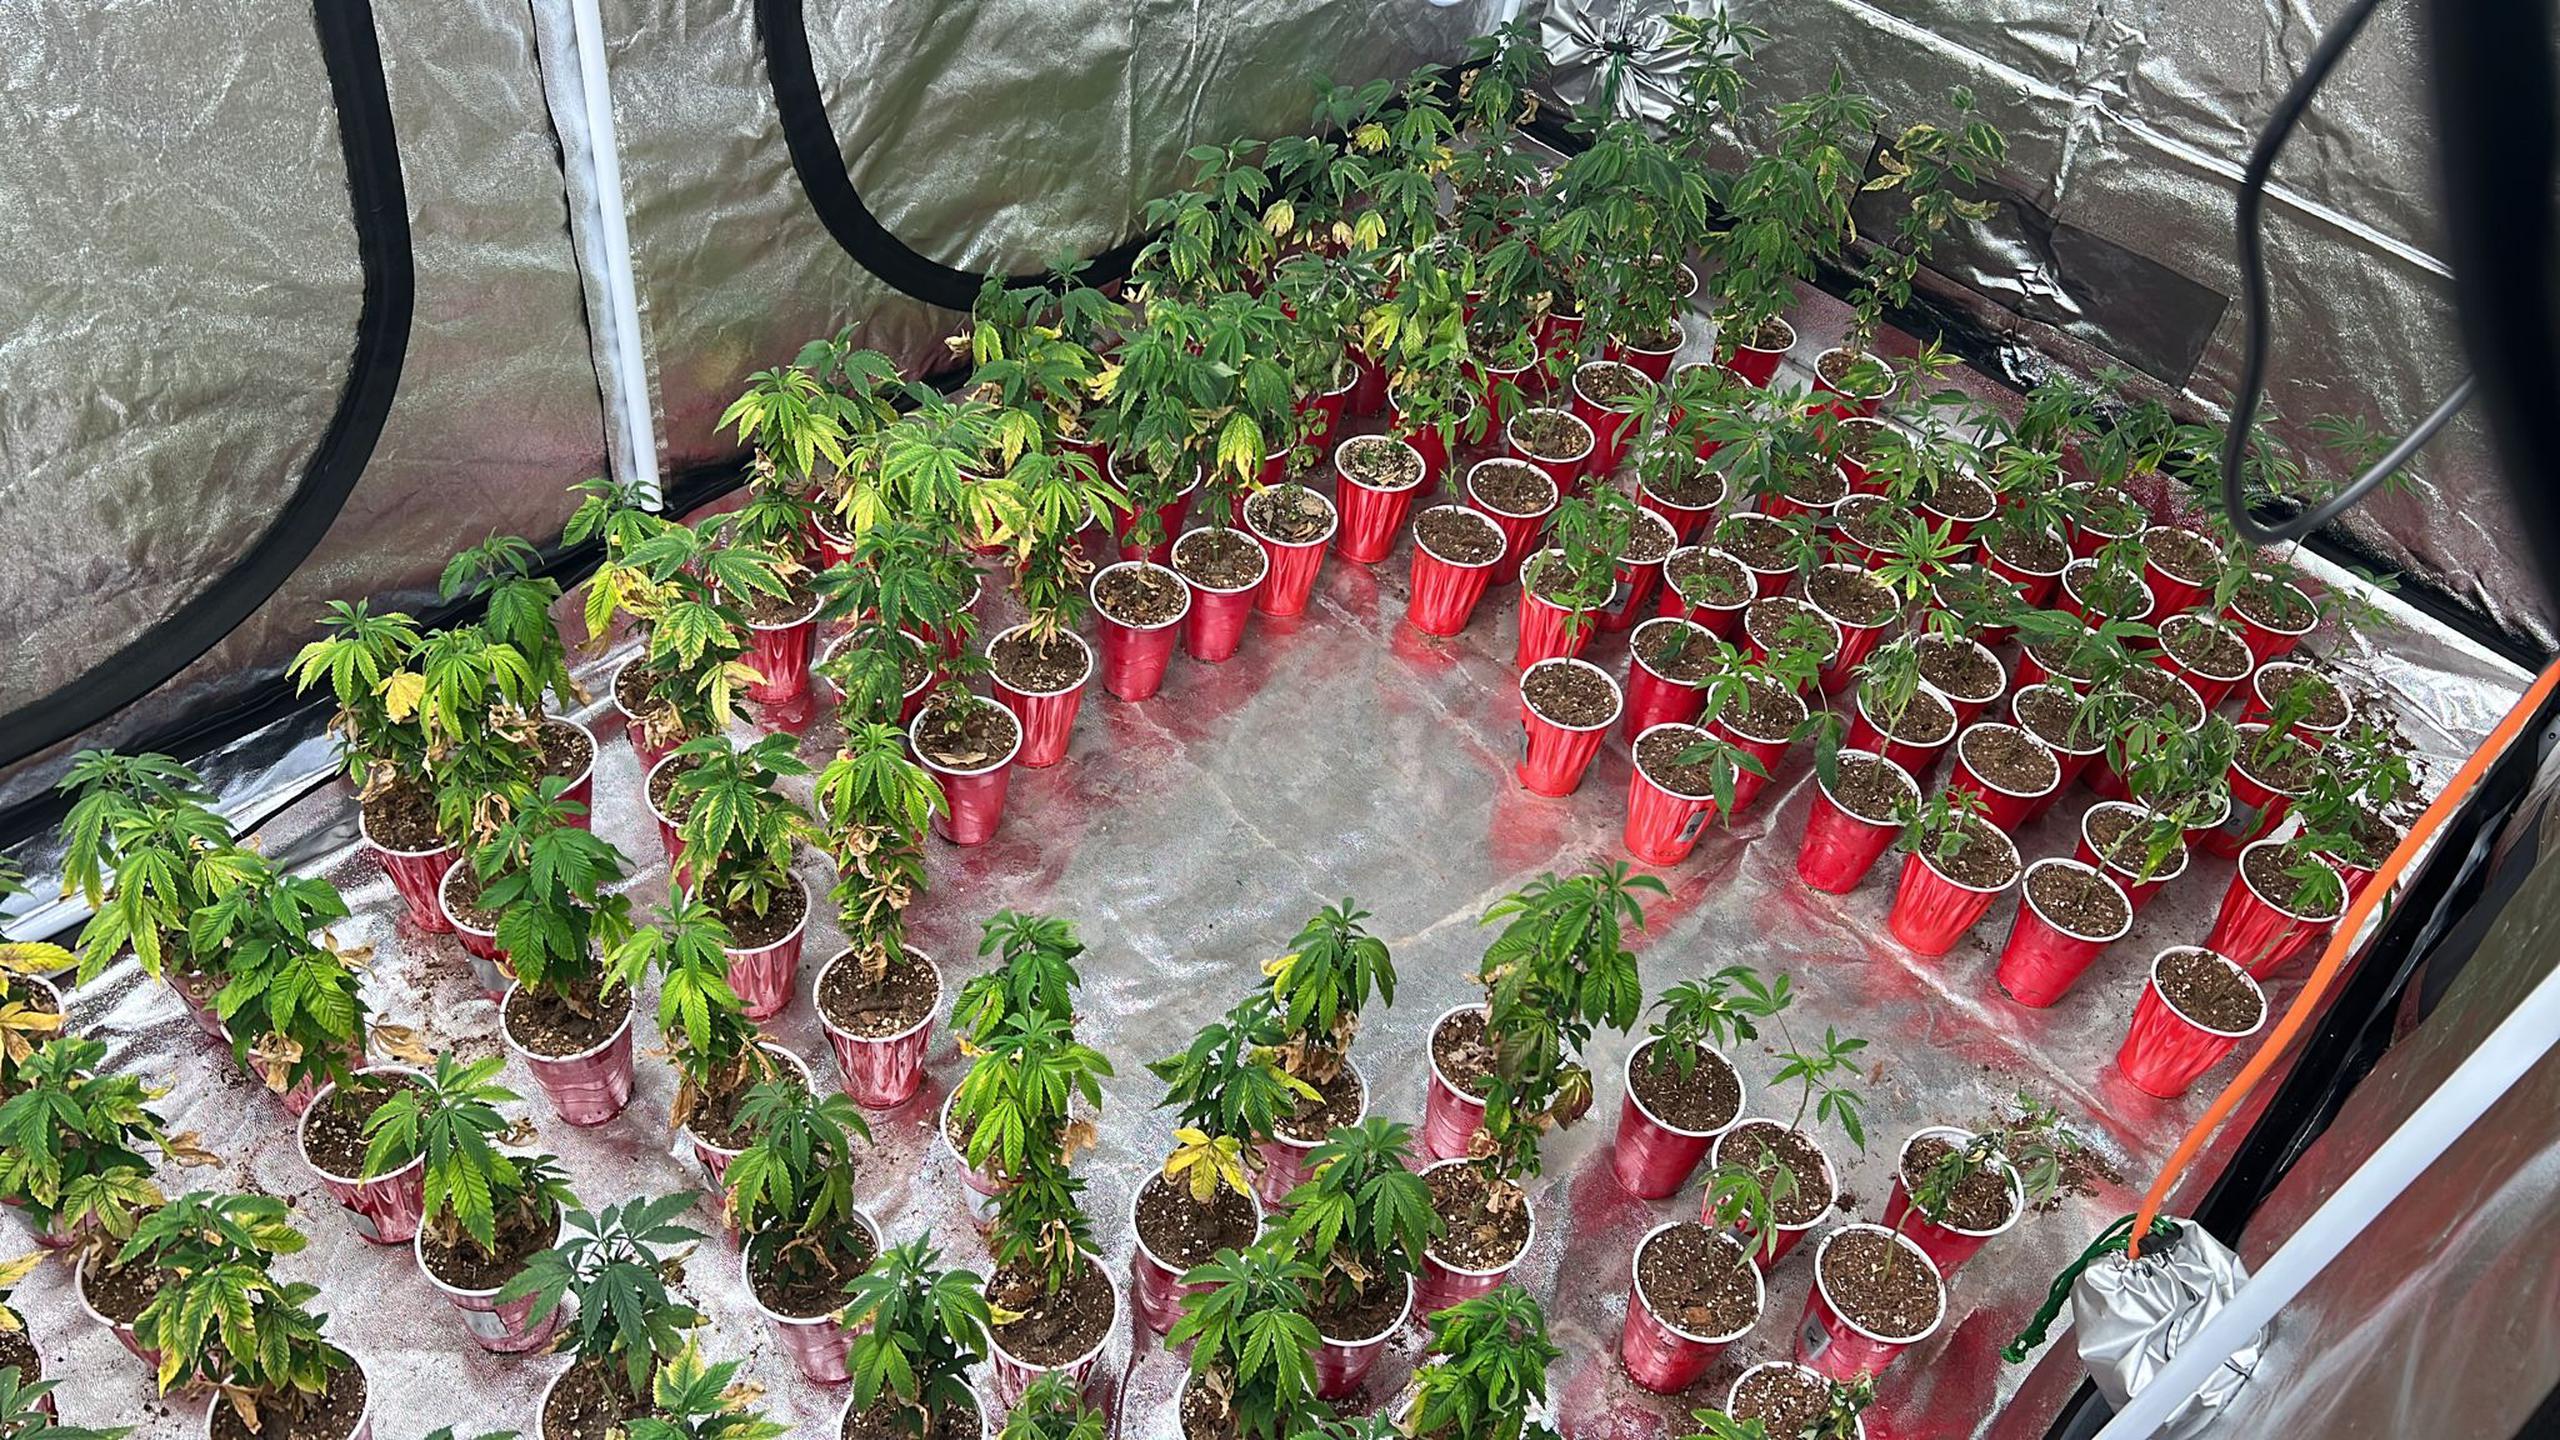 La División de Drogas Metropolitana ocupó más de 500 plantas de marihuana de diferentes tamaños en una residencia de la urbanización Ciudad Universitaria, en Trujillo Alto.